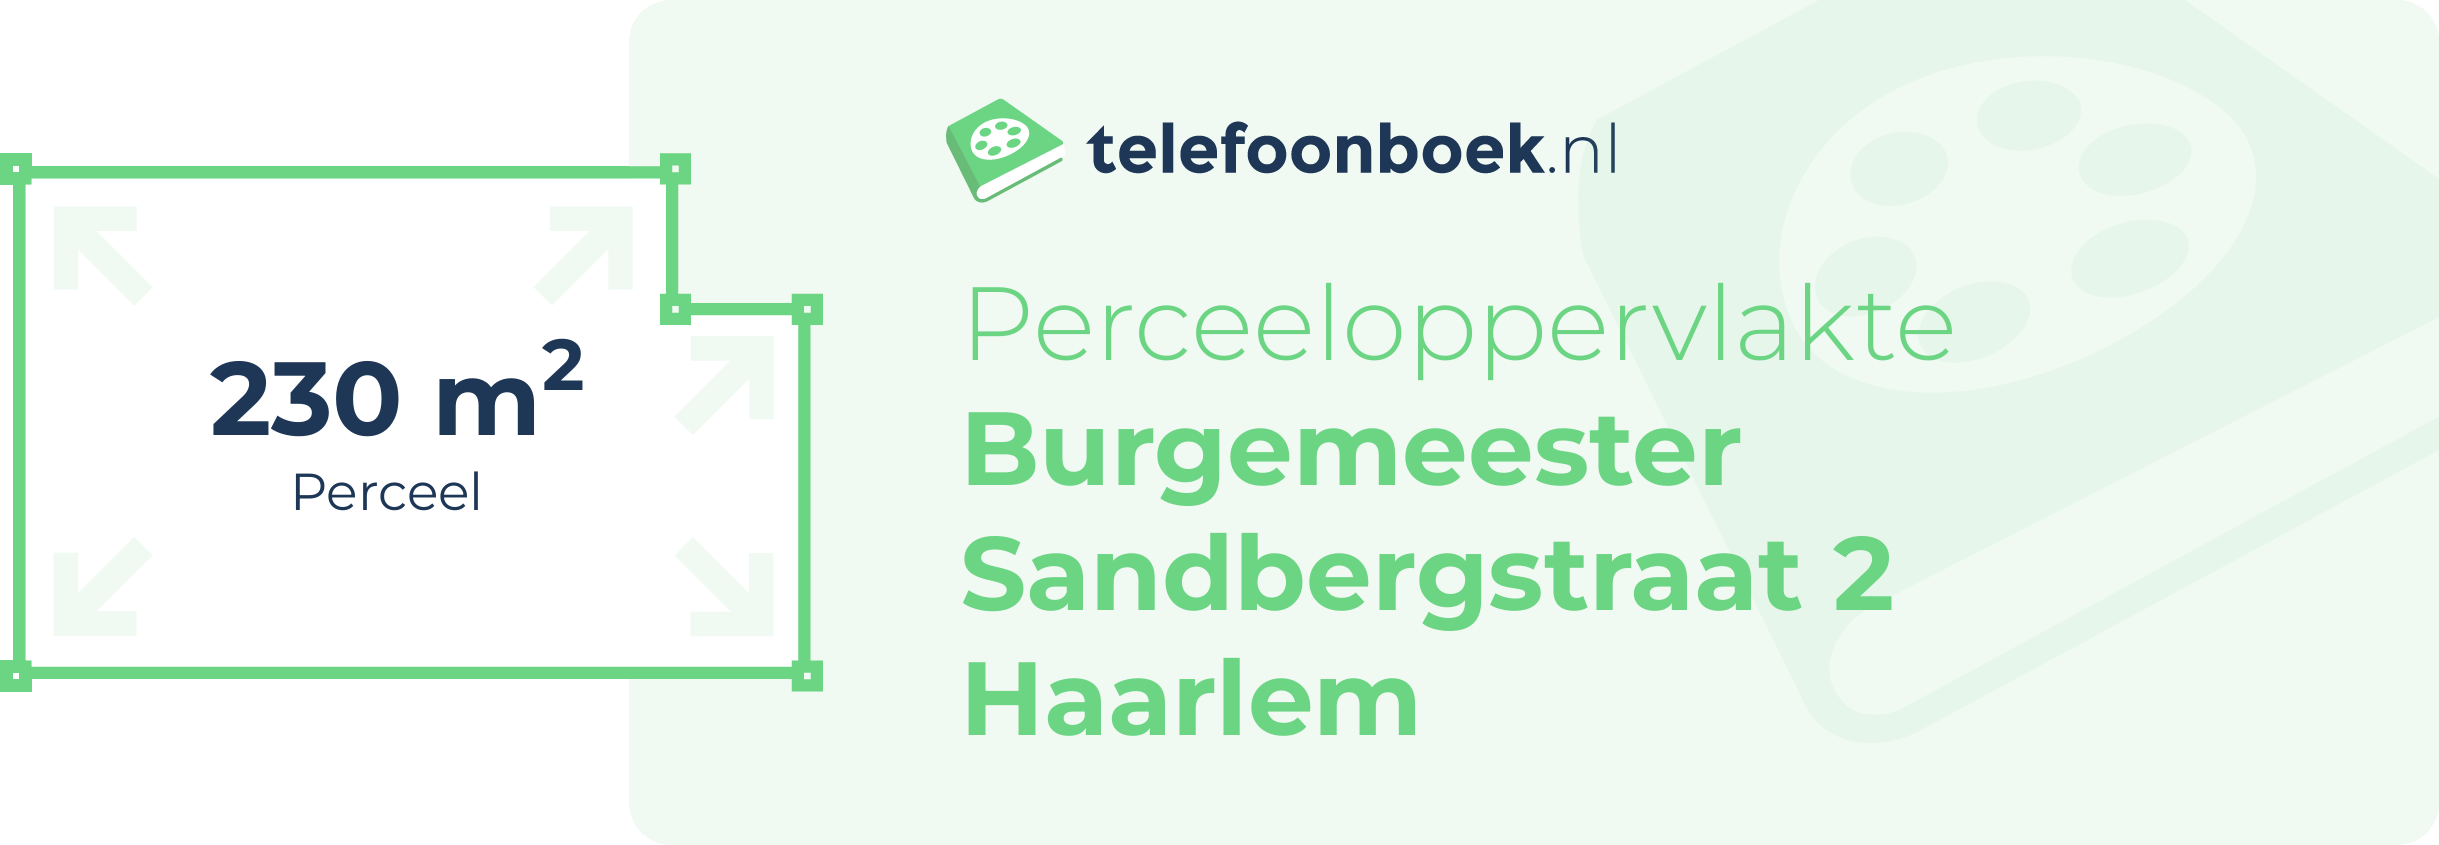 Perceeloppervlakte Burgemeester Sandbergstraat 2 Haarlem